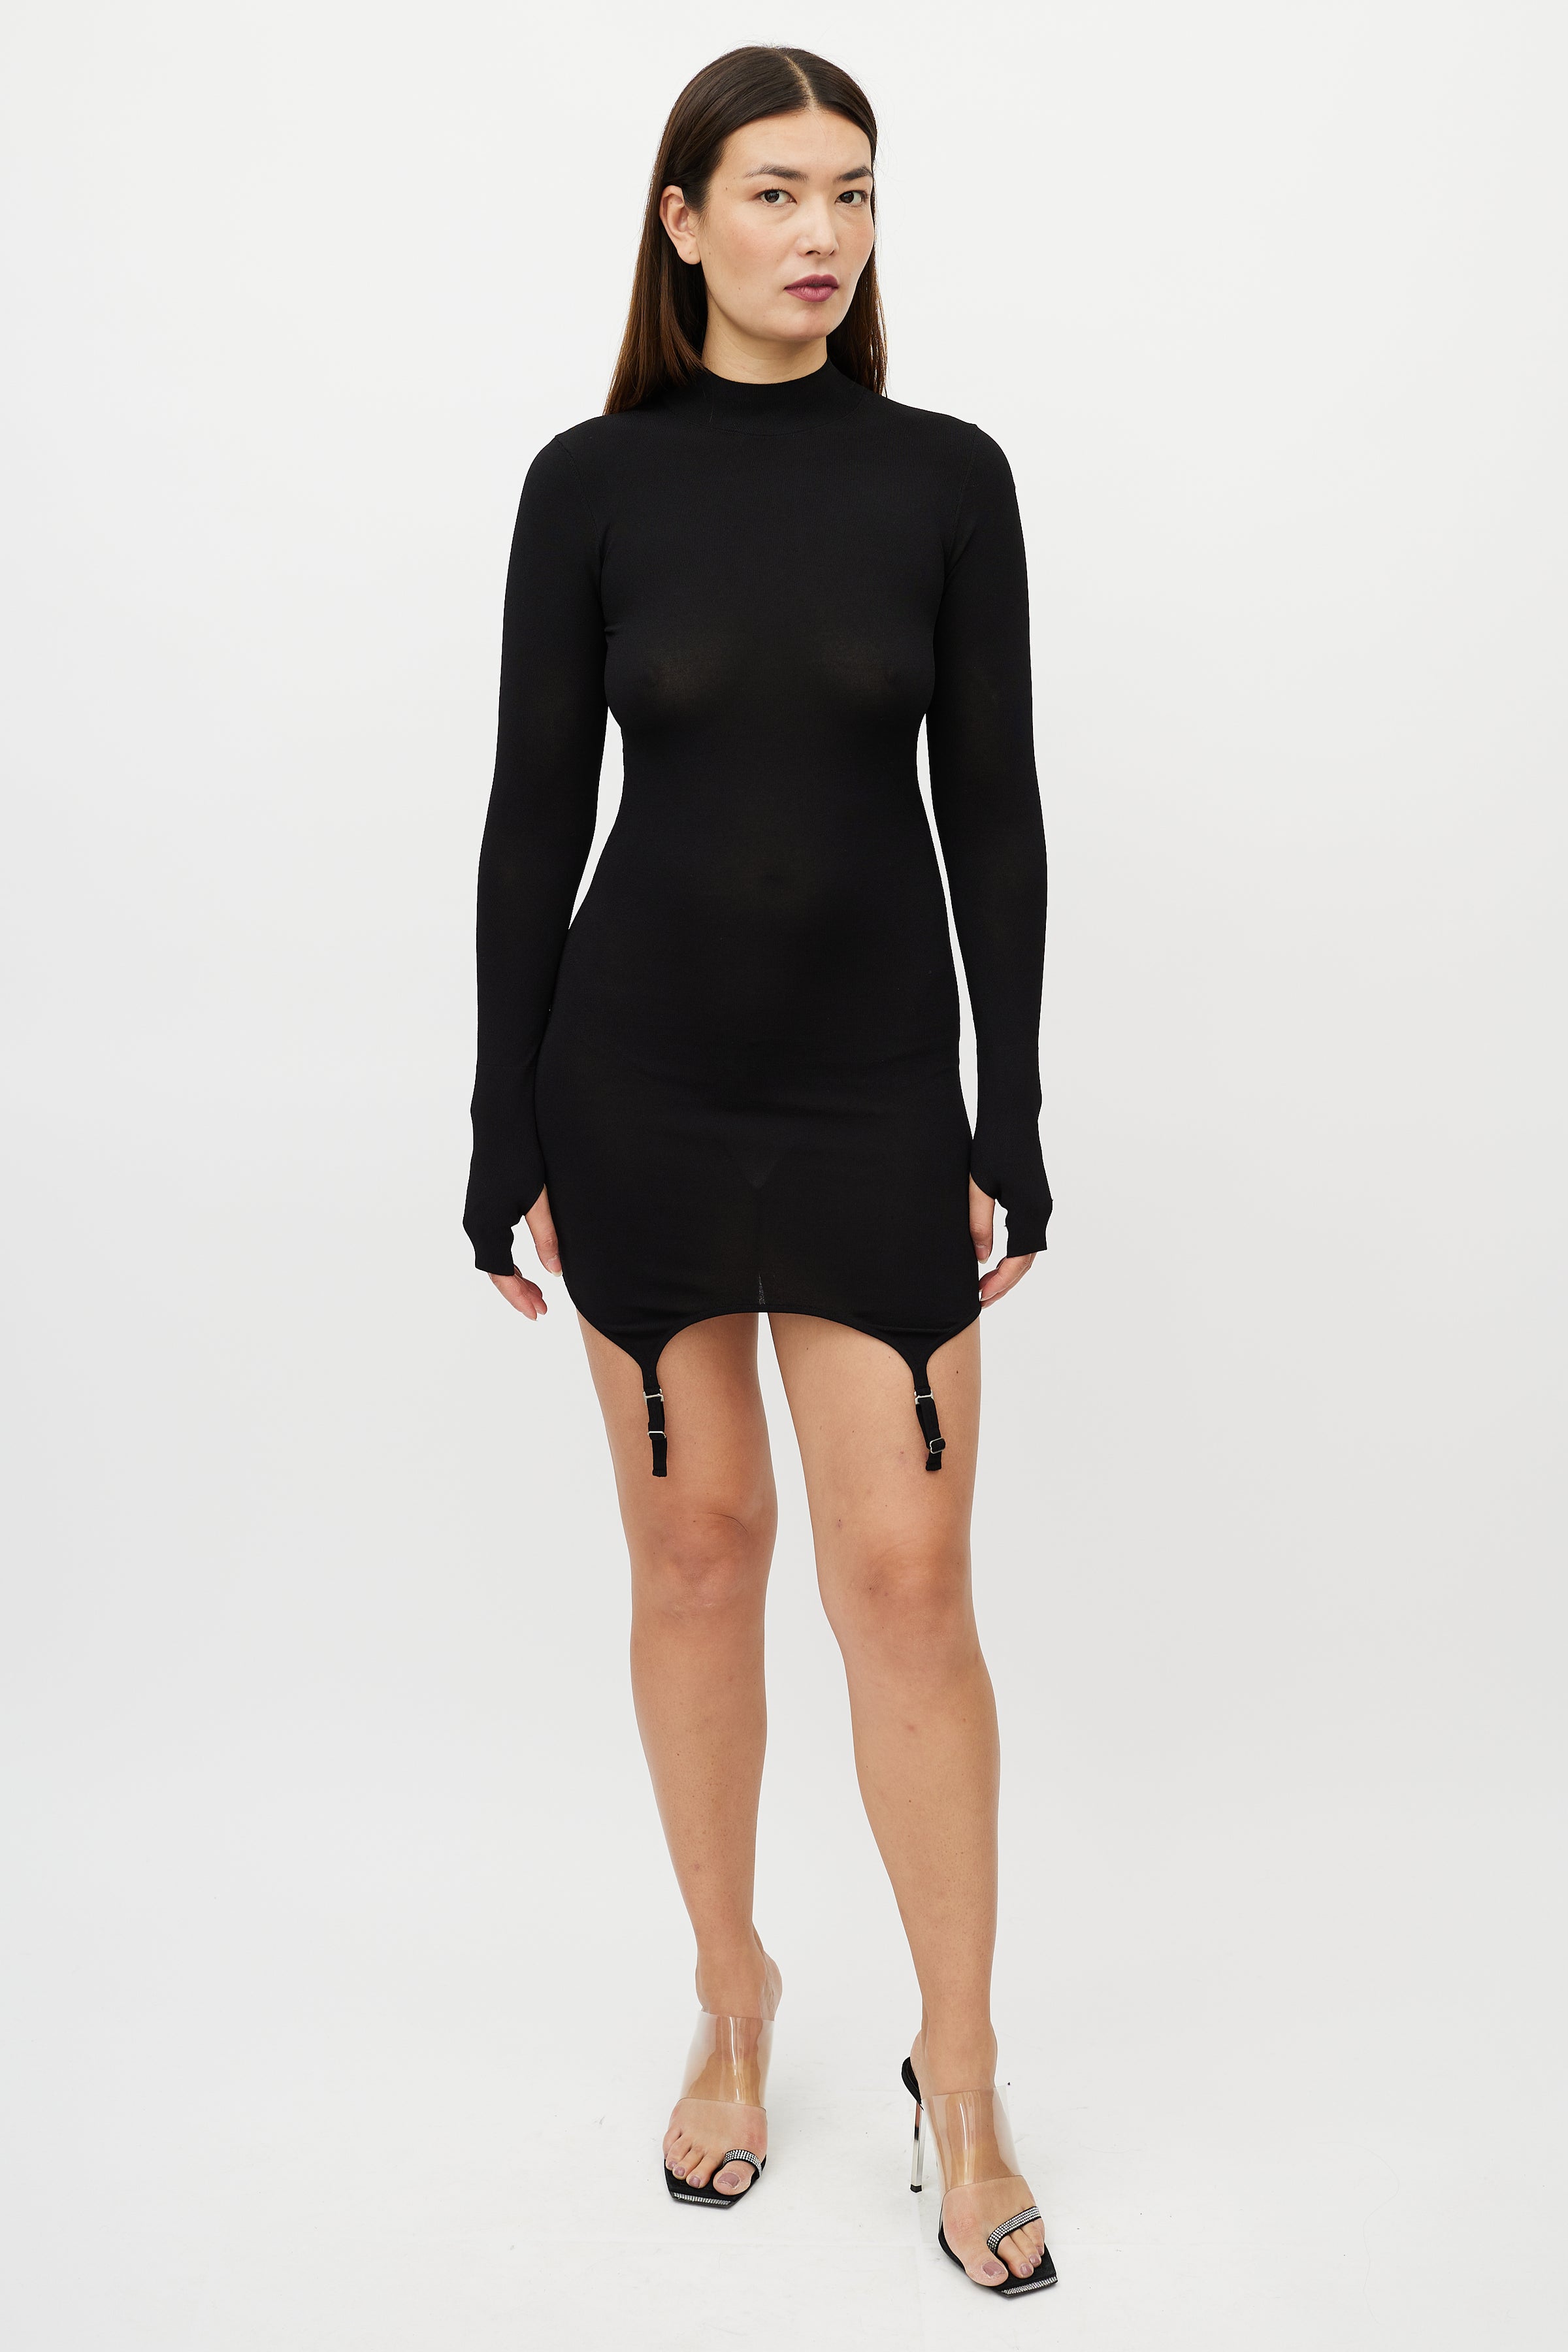 Dion Lee // Black Mock Neck Garter Dress – VSP Consignment